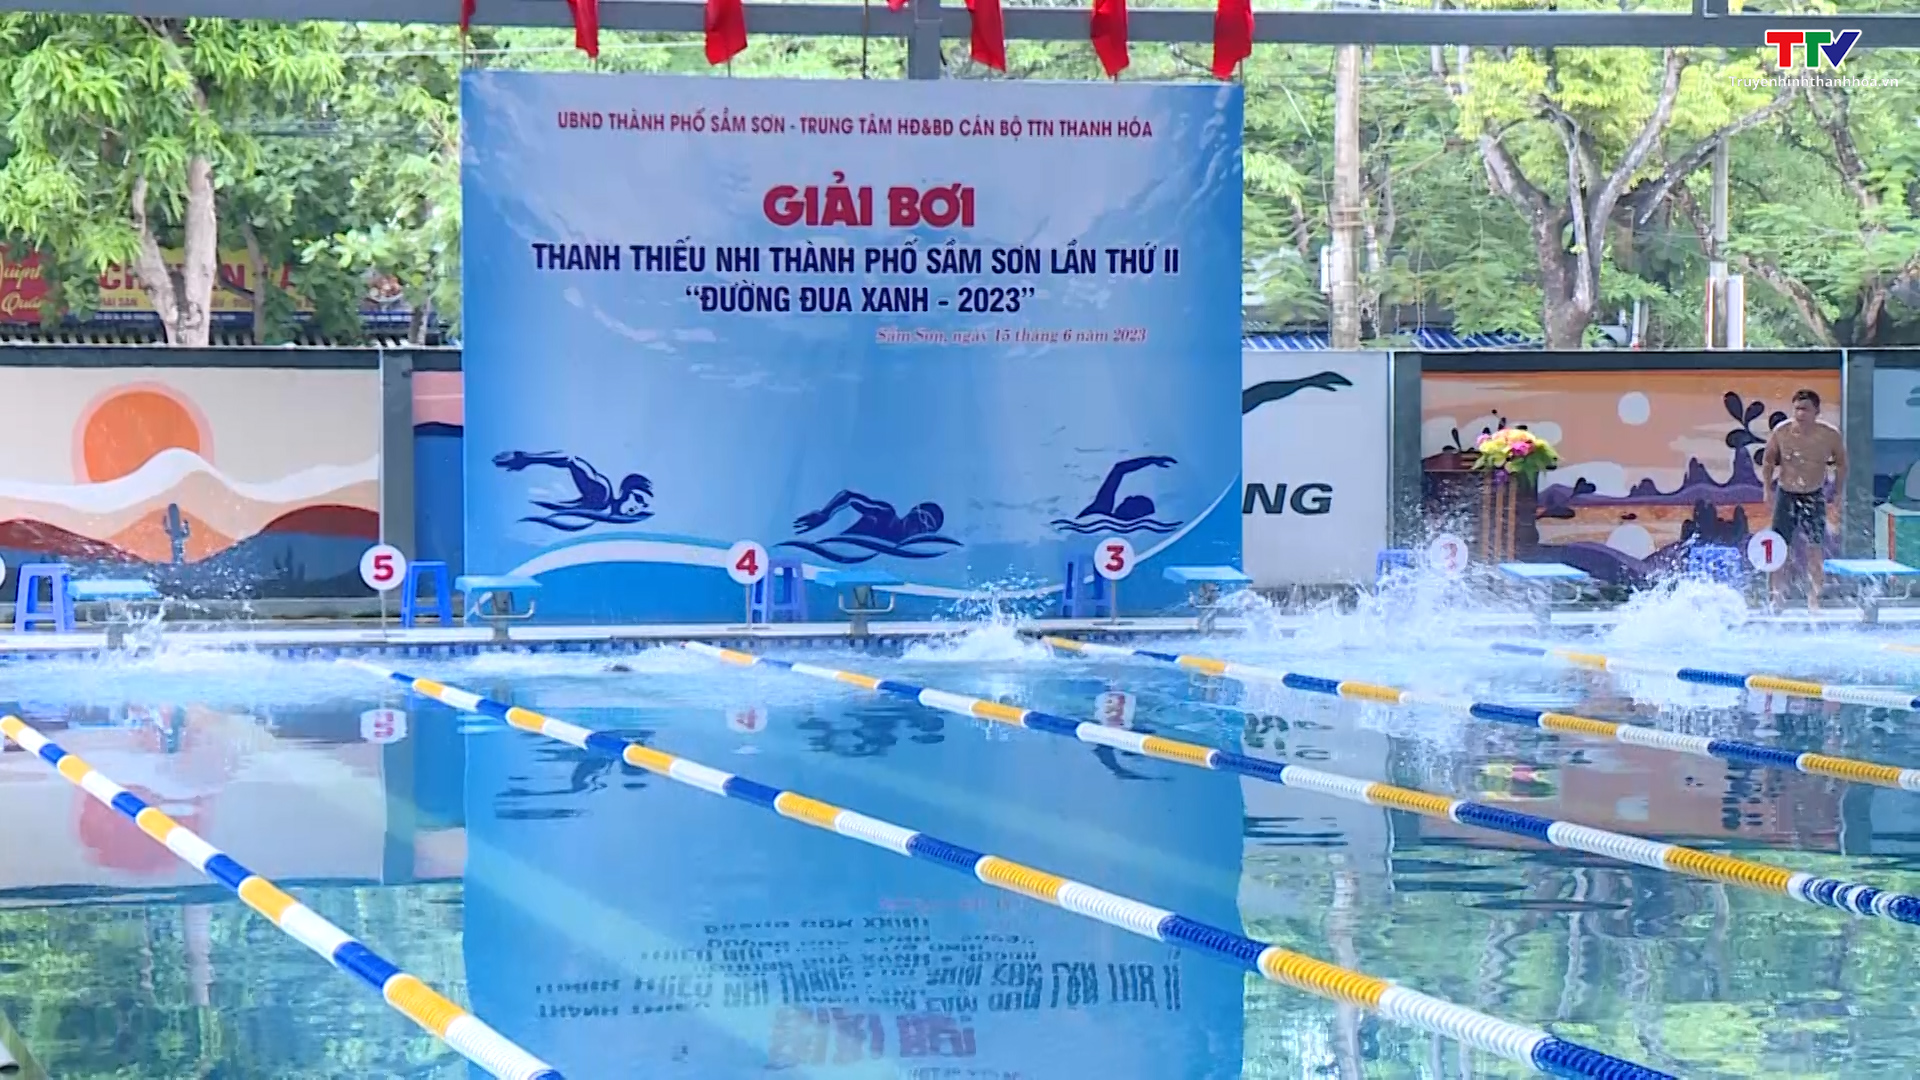 Giải bơi thanh thiếu nhi thành phố Sầm Sơn lần thứ II – Đường đua xanh năm 2023 - Ảnh 2.